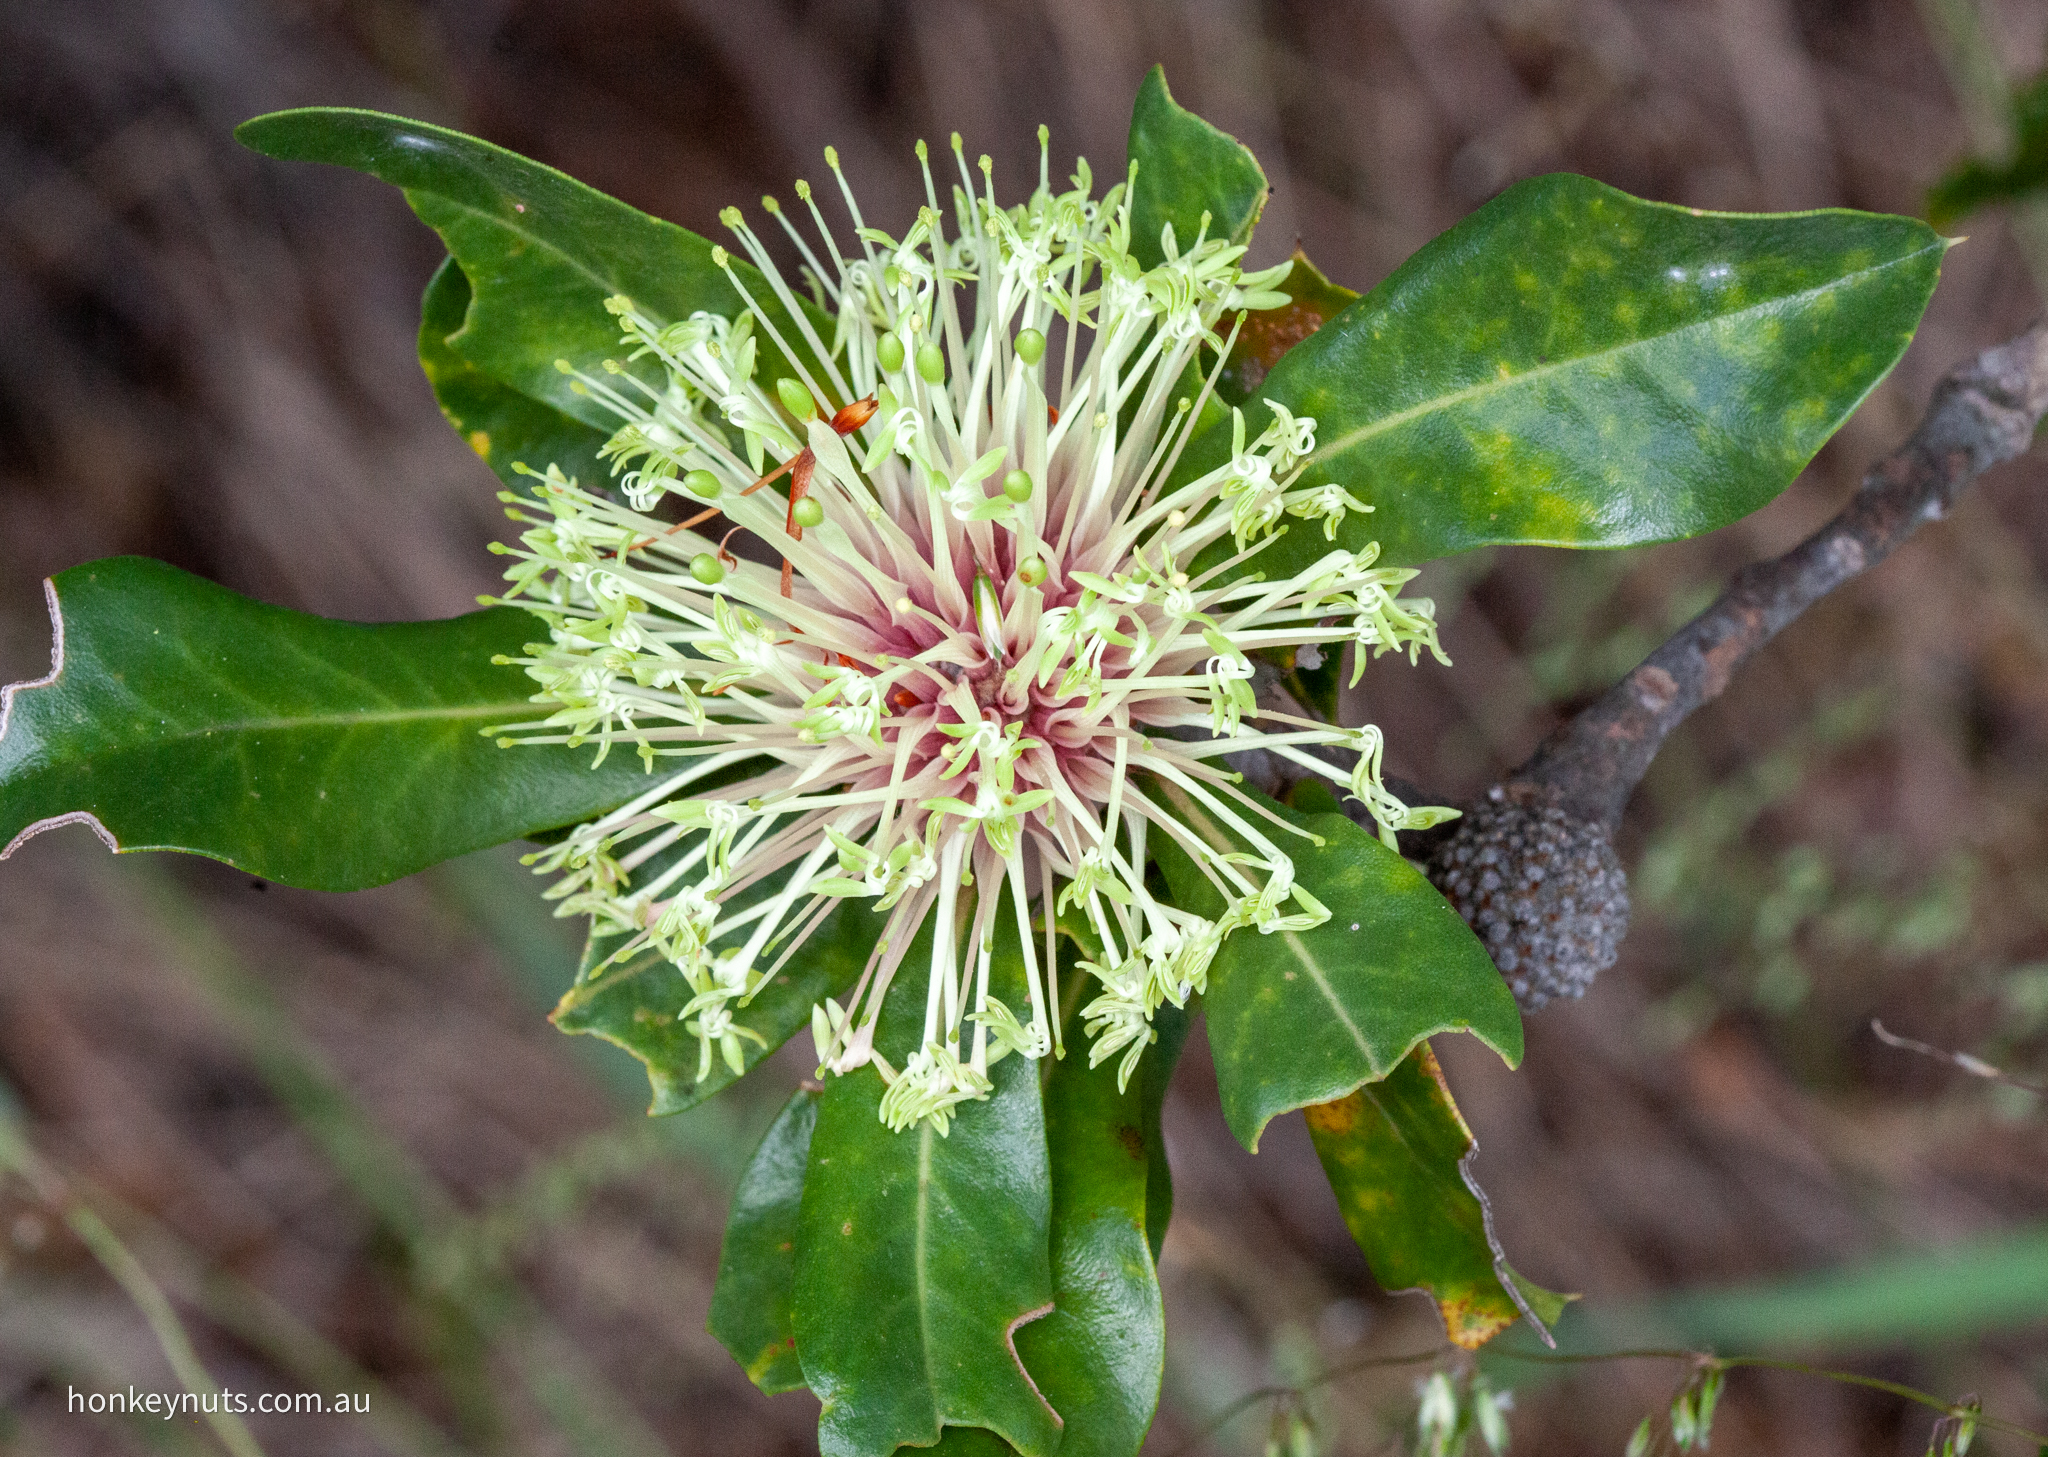 Holly-leaf banksia